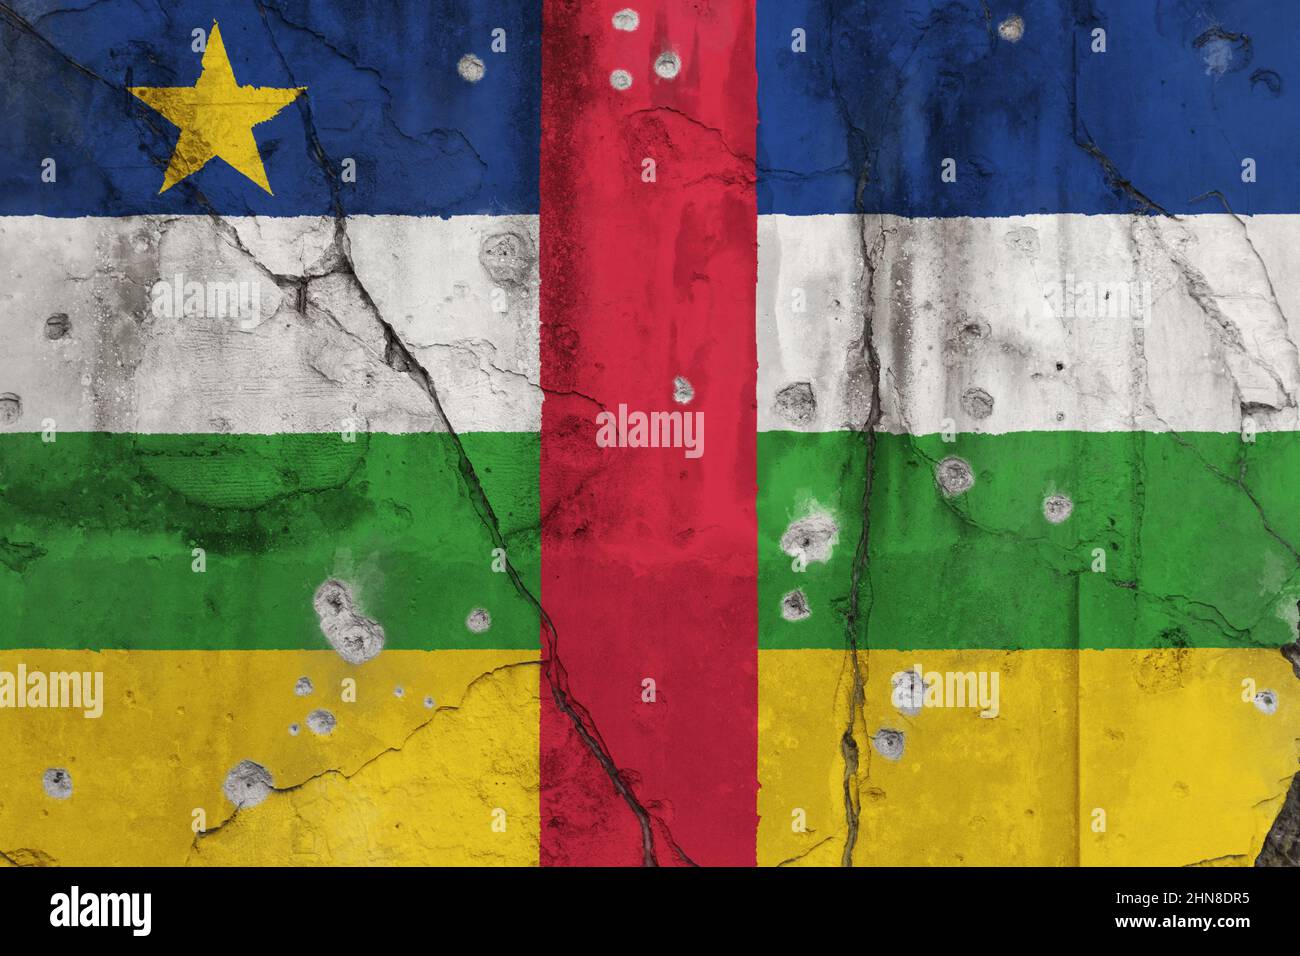 Bandera desgastada de la República Centroafricana (CAR) pintada en una pared agrietada con agujeros de bala. Concepto de violencia y crisis en la República Centroafricana. Foto de stock